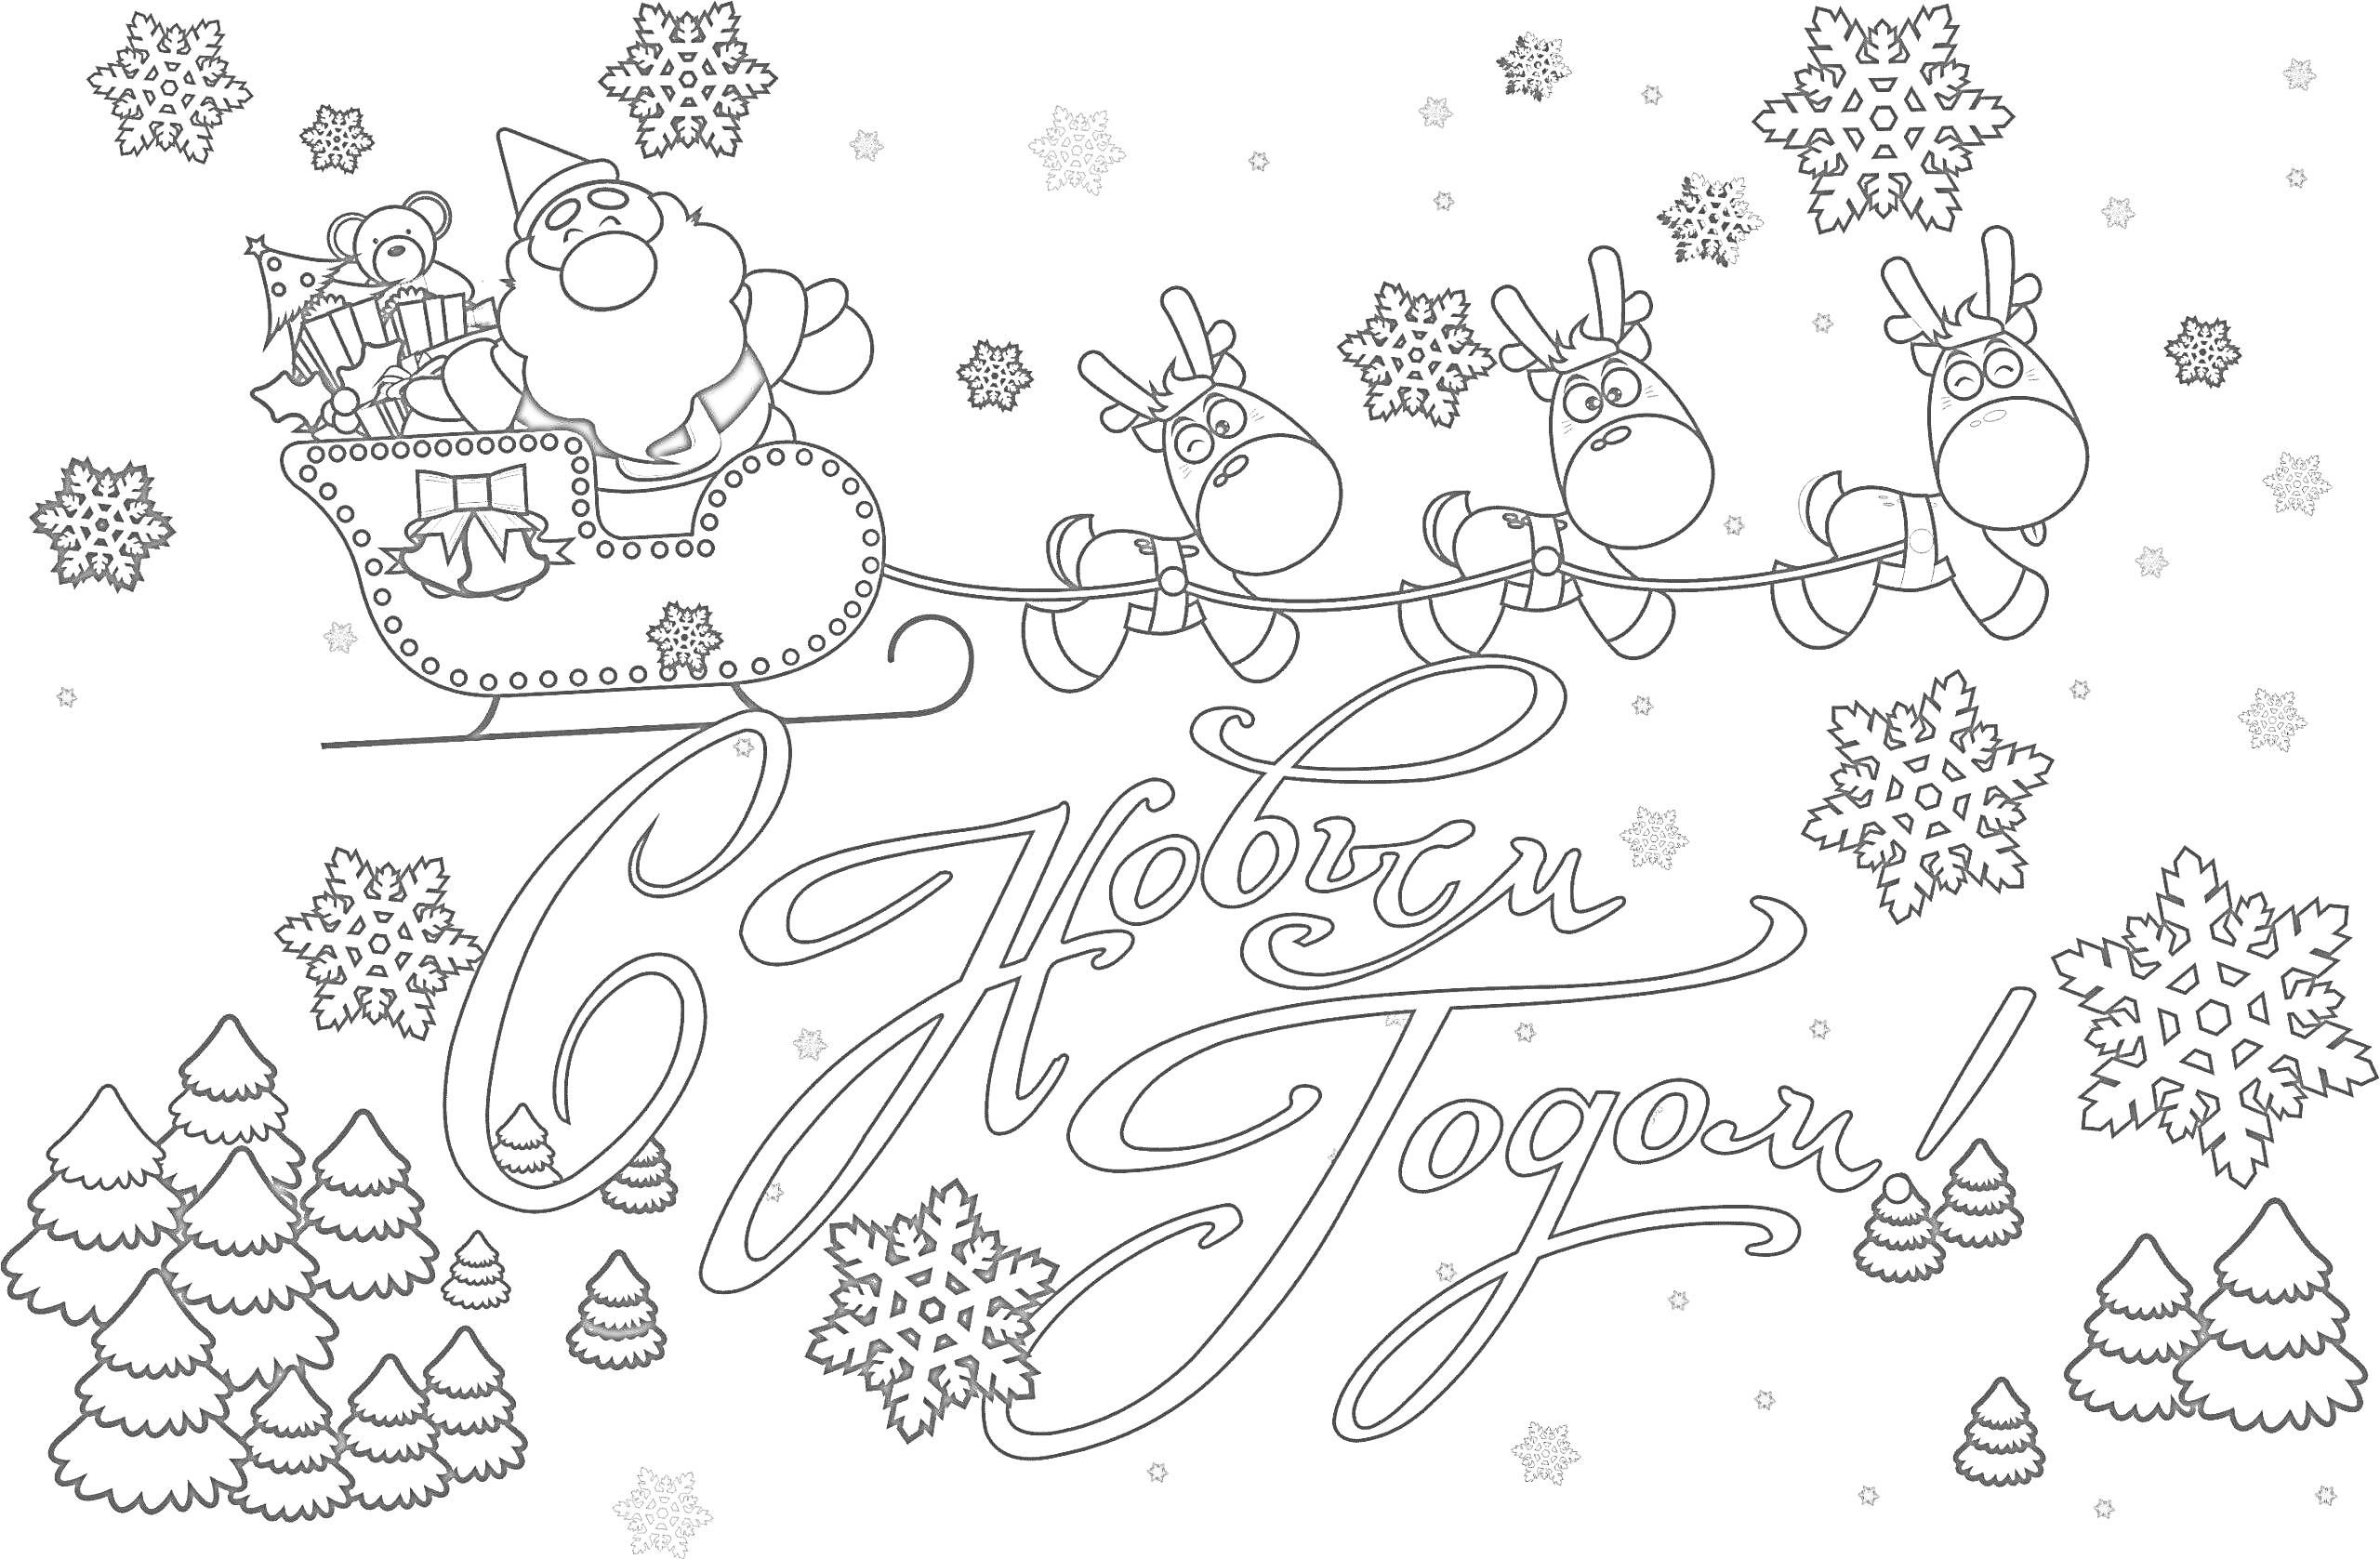 Раскраска С Новым Годом, Санта-Клаус в санях с подарками, запряженные оленями, снежинки, ёлки, снежные сугробы